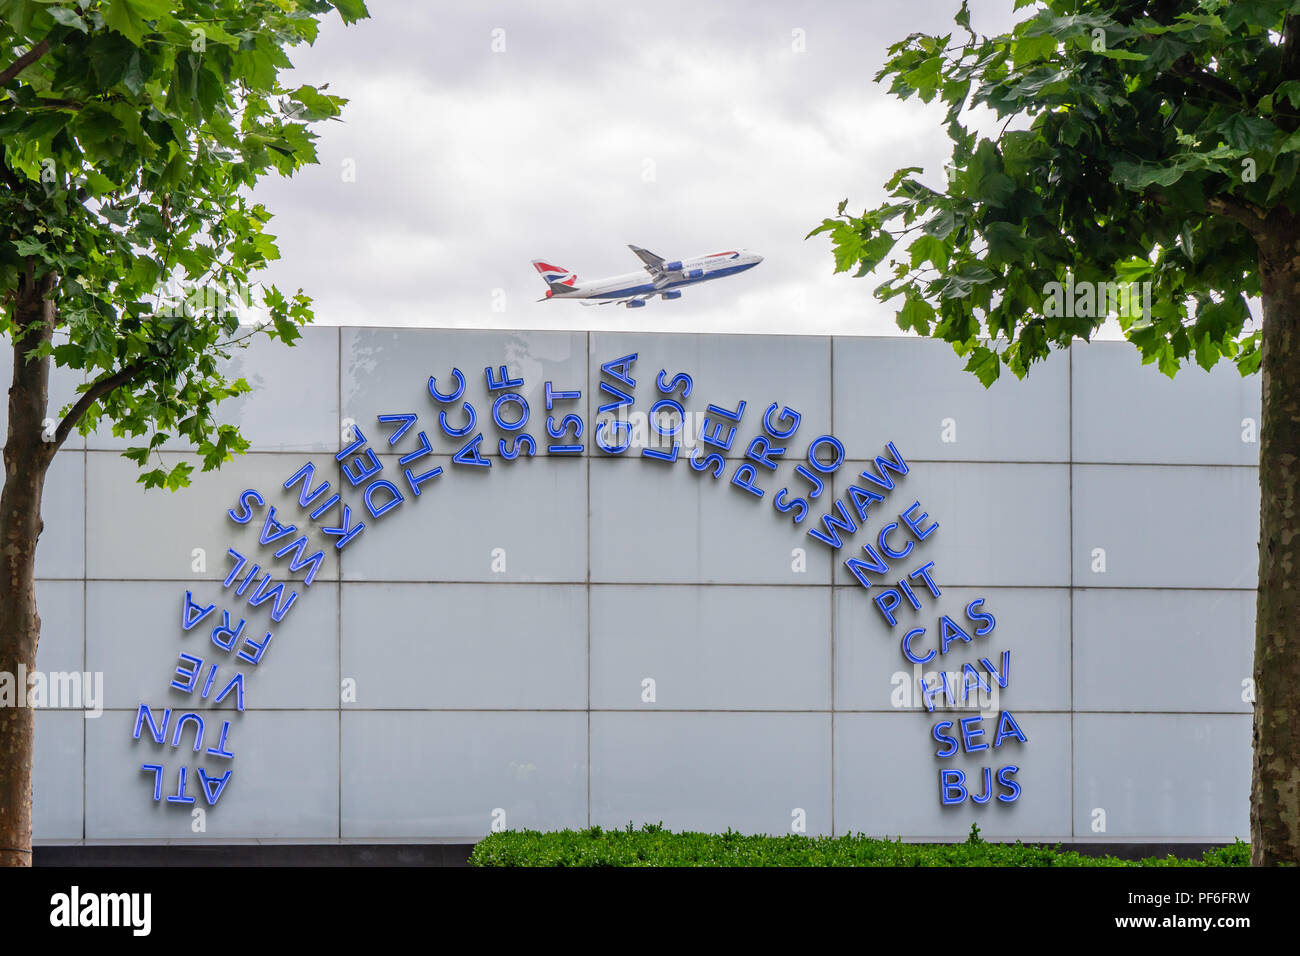 Codes IATA mondiaux bleus illuminés affichés à l'extérieur du terminal 5 de l'aéroport de Londres Heathrow, décollage de l'avion des voies aériennes britanniques en arrière-plan, Royaume-Uni Banque D'Images